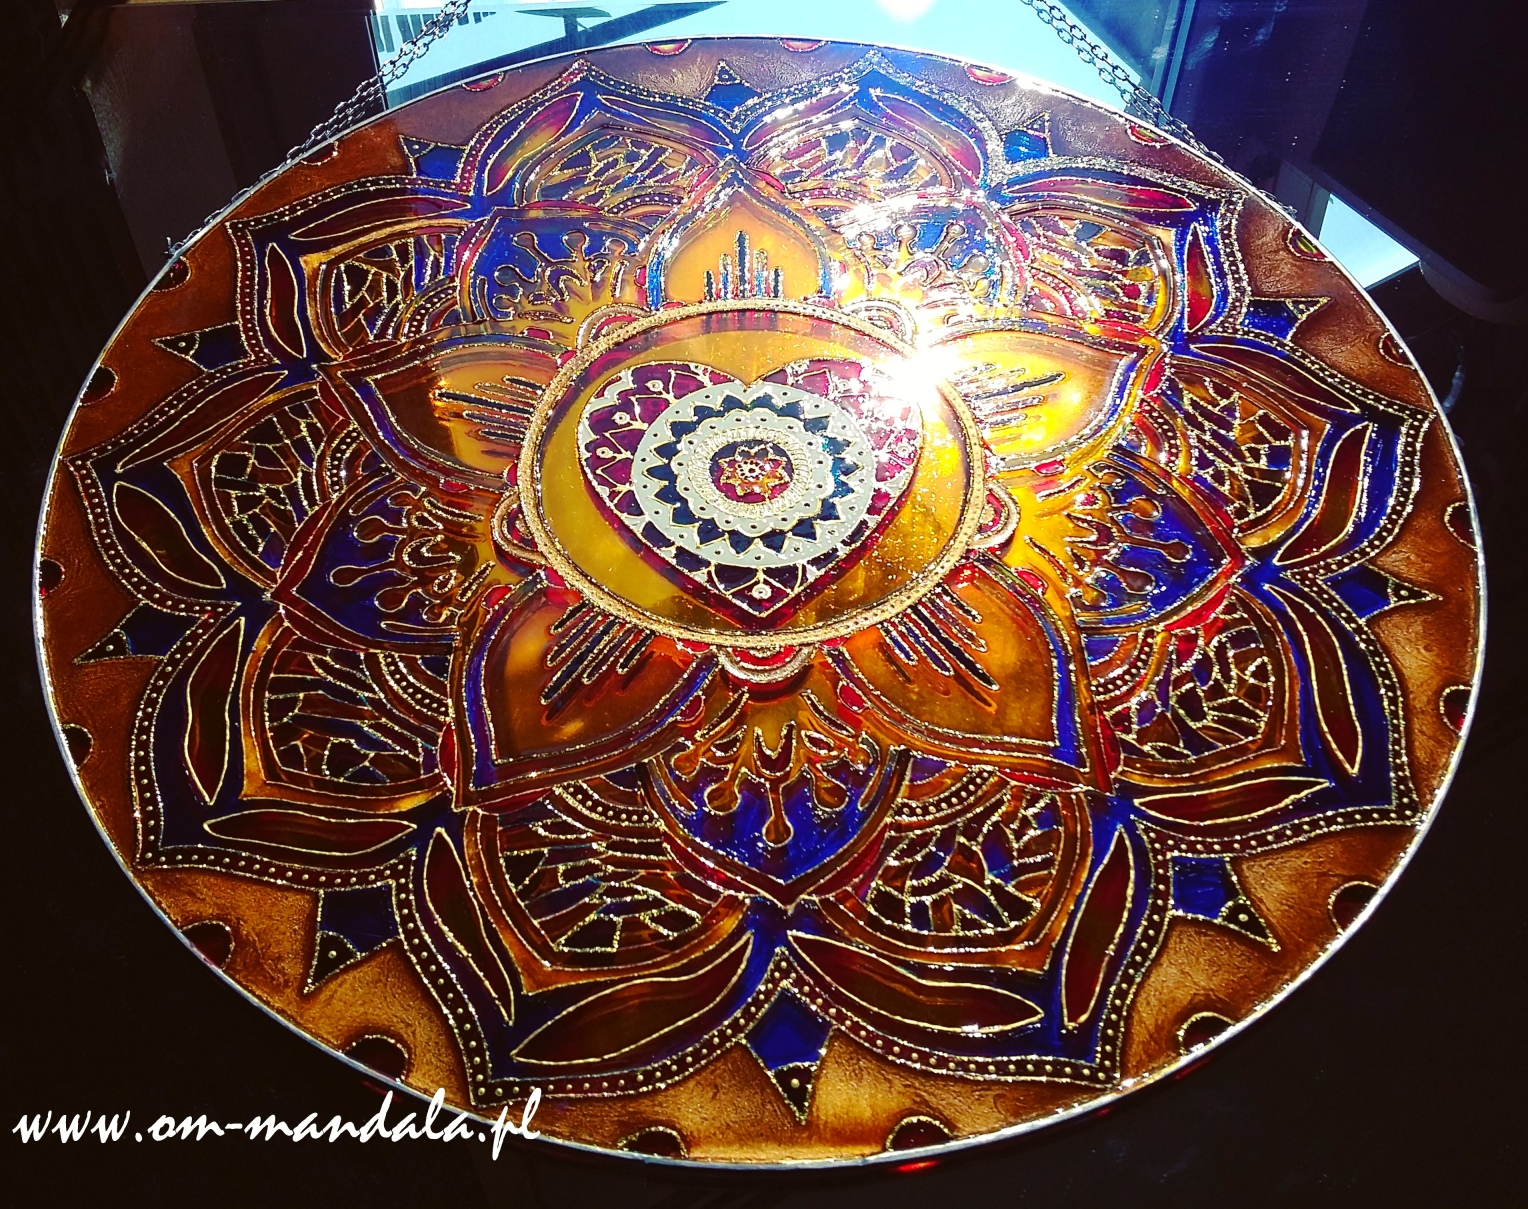 Mandala full of love energy on glass. To order visit: www.om-mandala.pl